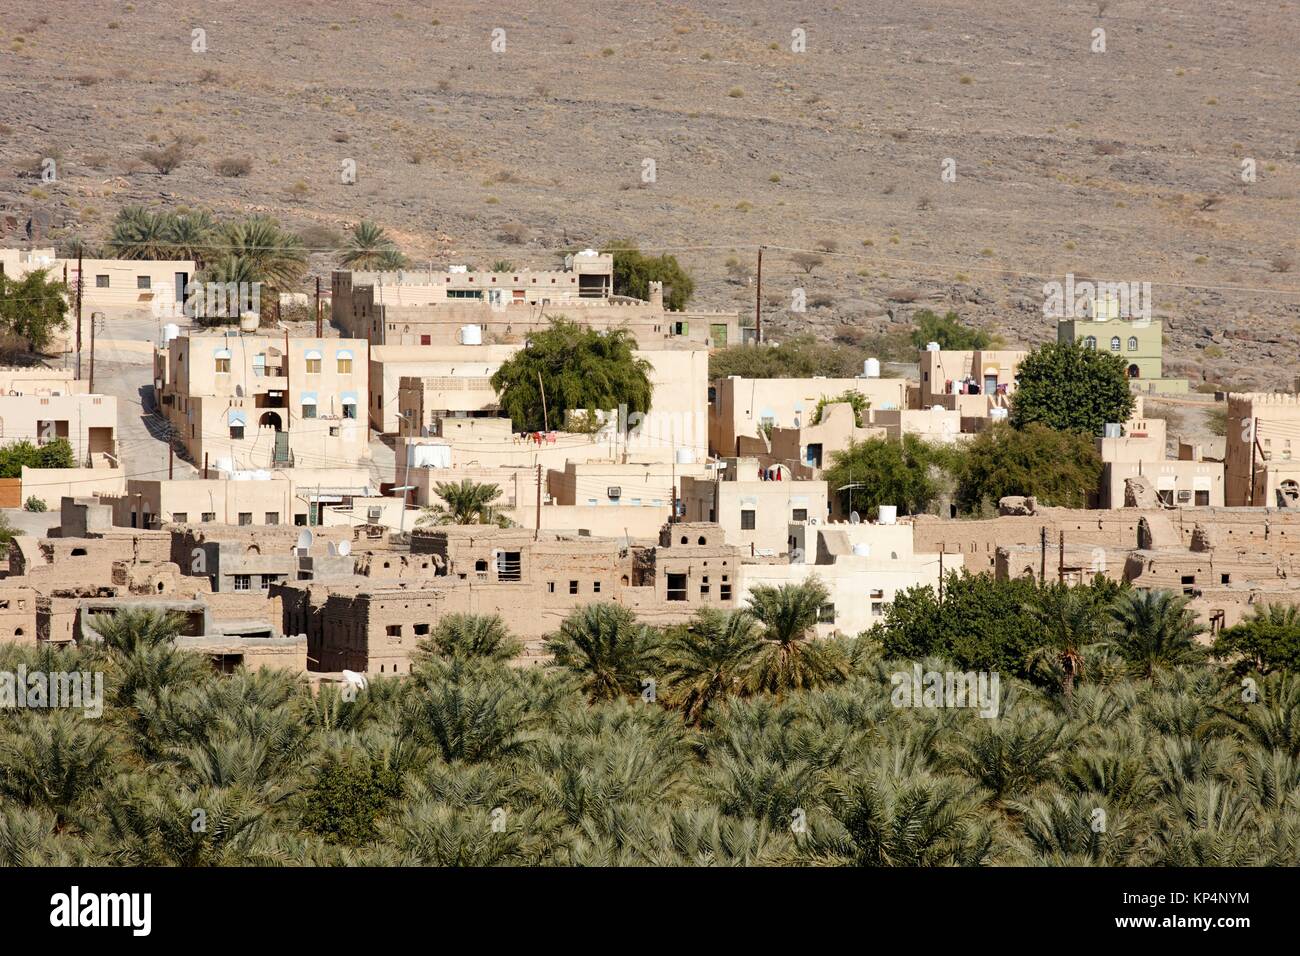 Le palme e il paesaggio urbano. Città storica di Al Hamra, Oman. Foto Stock